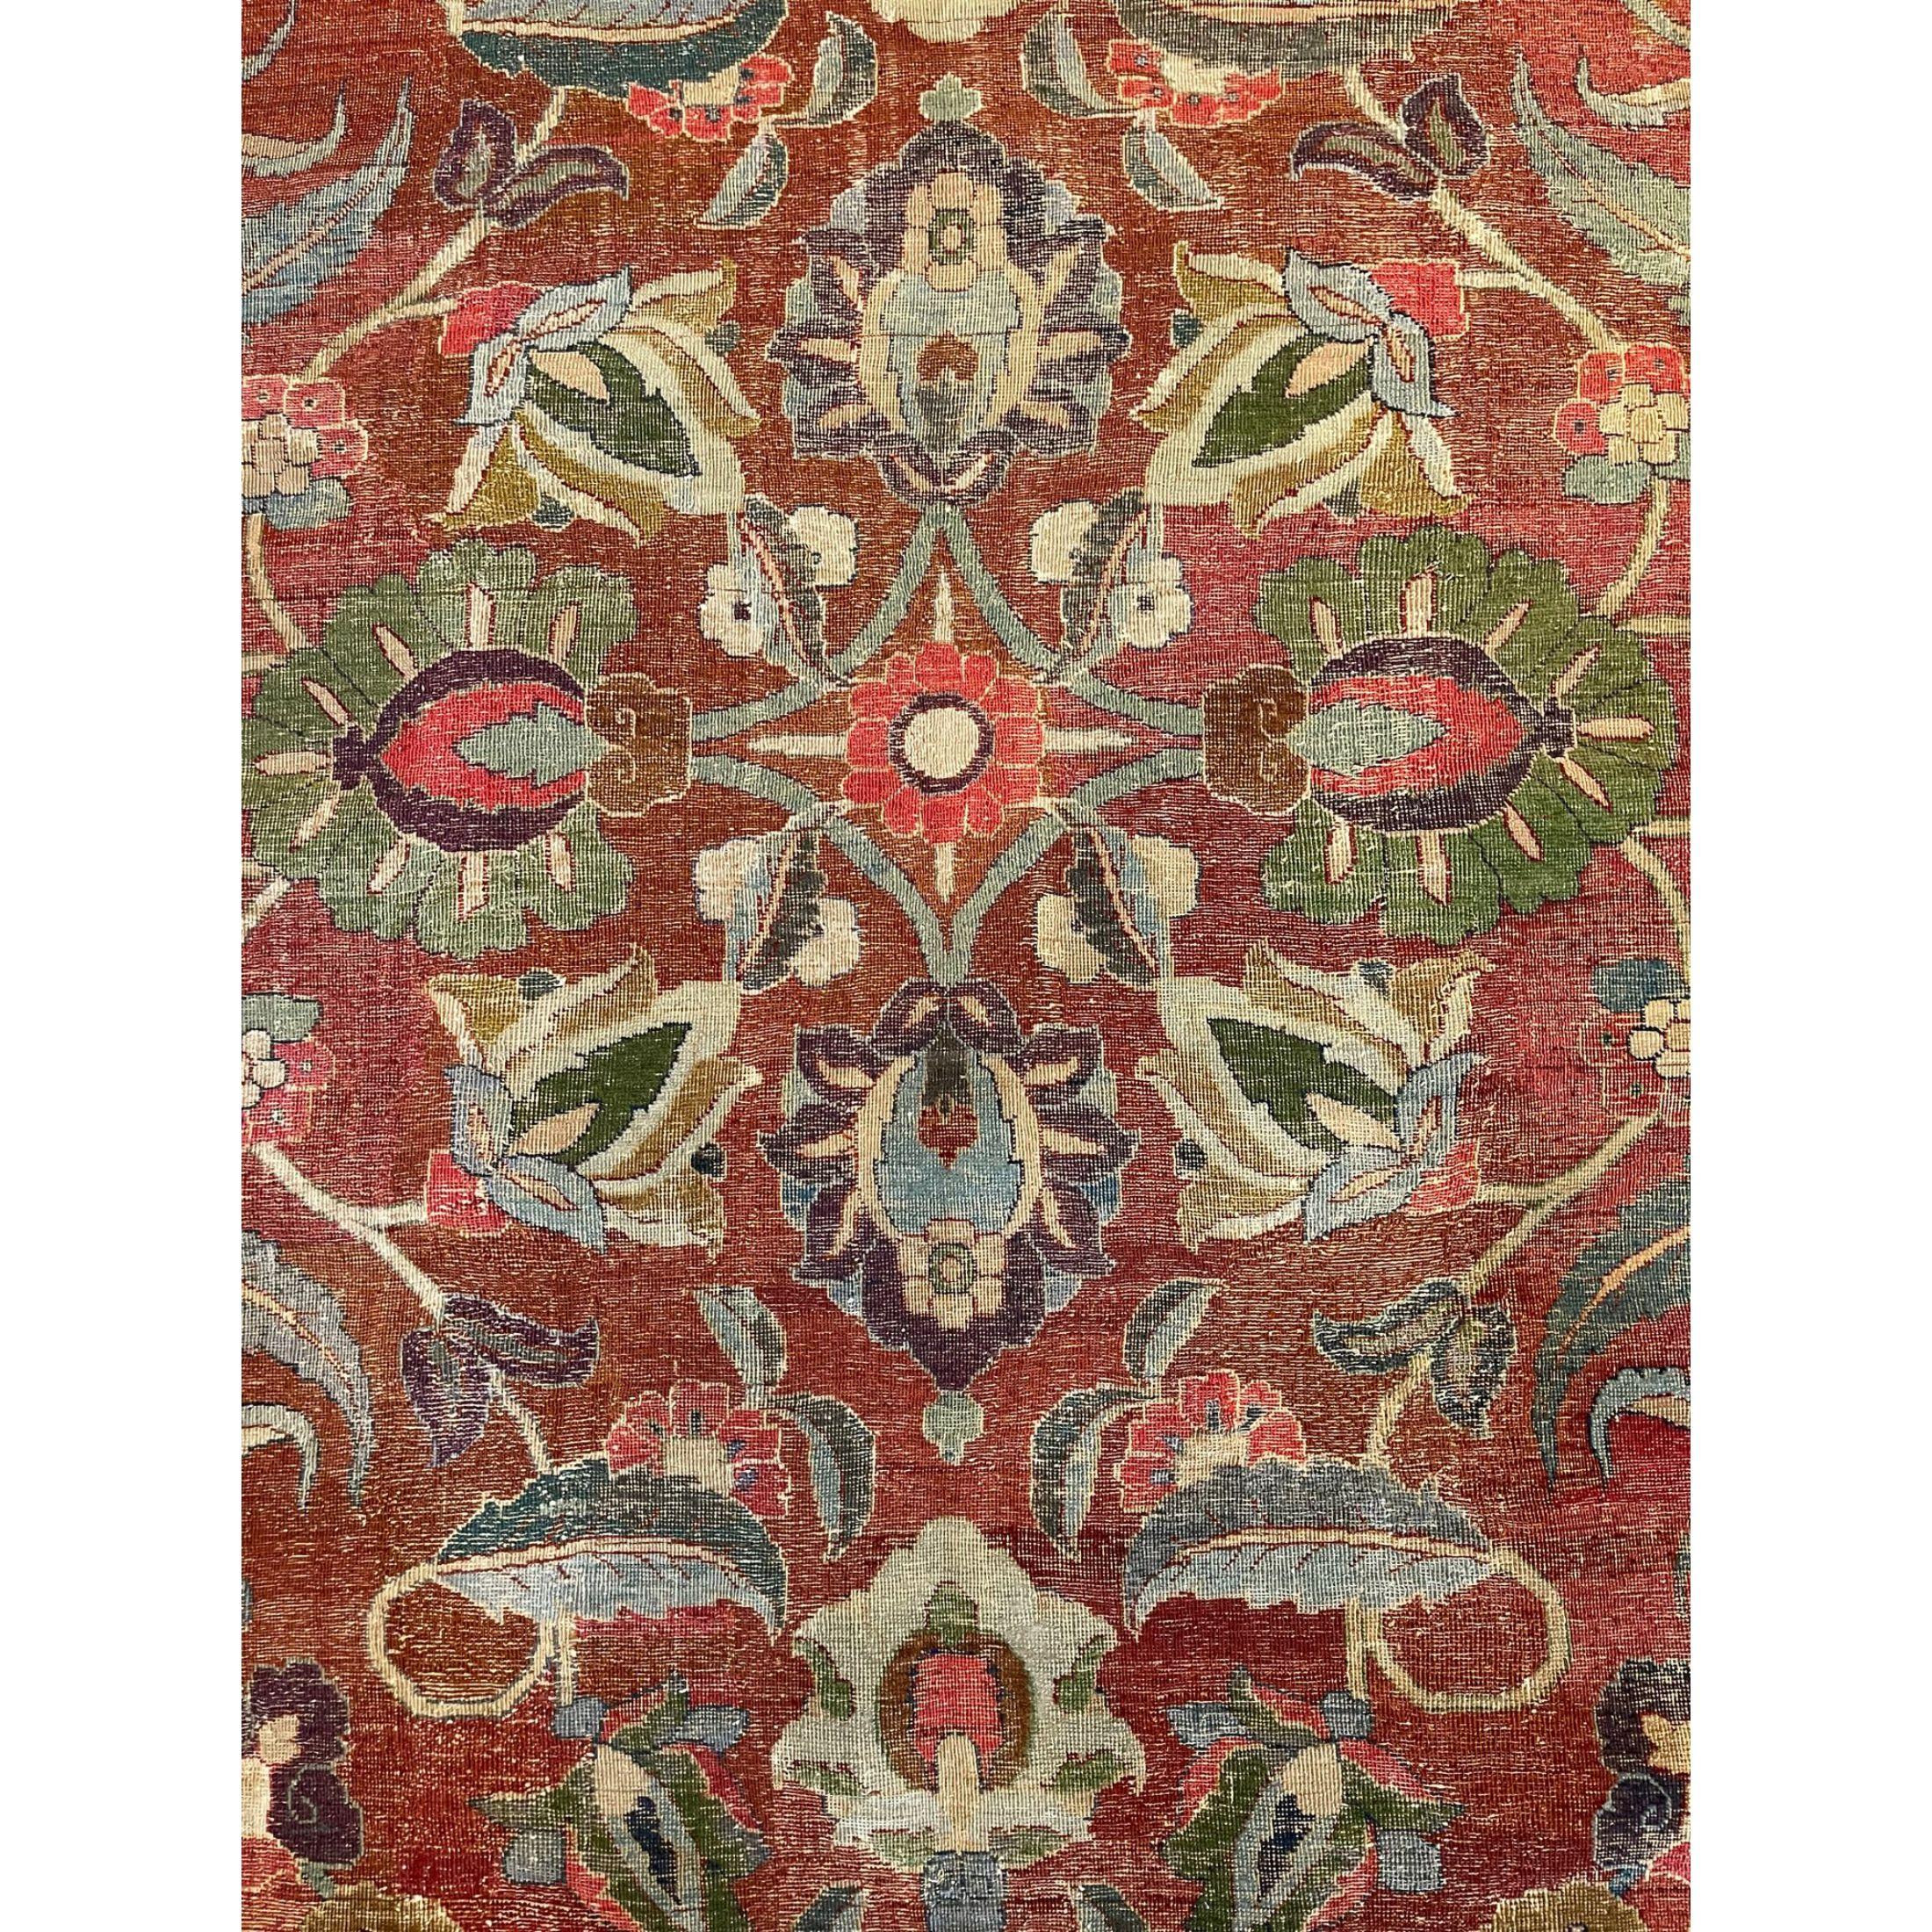 Les tapis anciens de Tabriz se distinguent par leur excellent tissage et par leur respect remarquable des traditions classiques de la conception des tapis persans anciens. Mais ils ne se distinguent pas par un motif particulier ou par leur